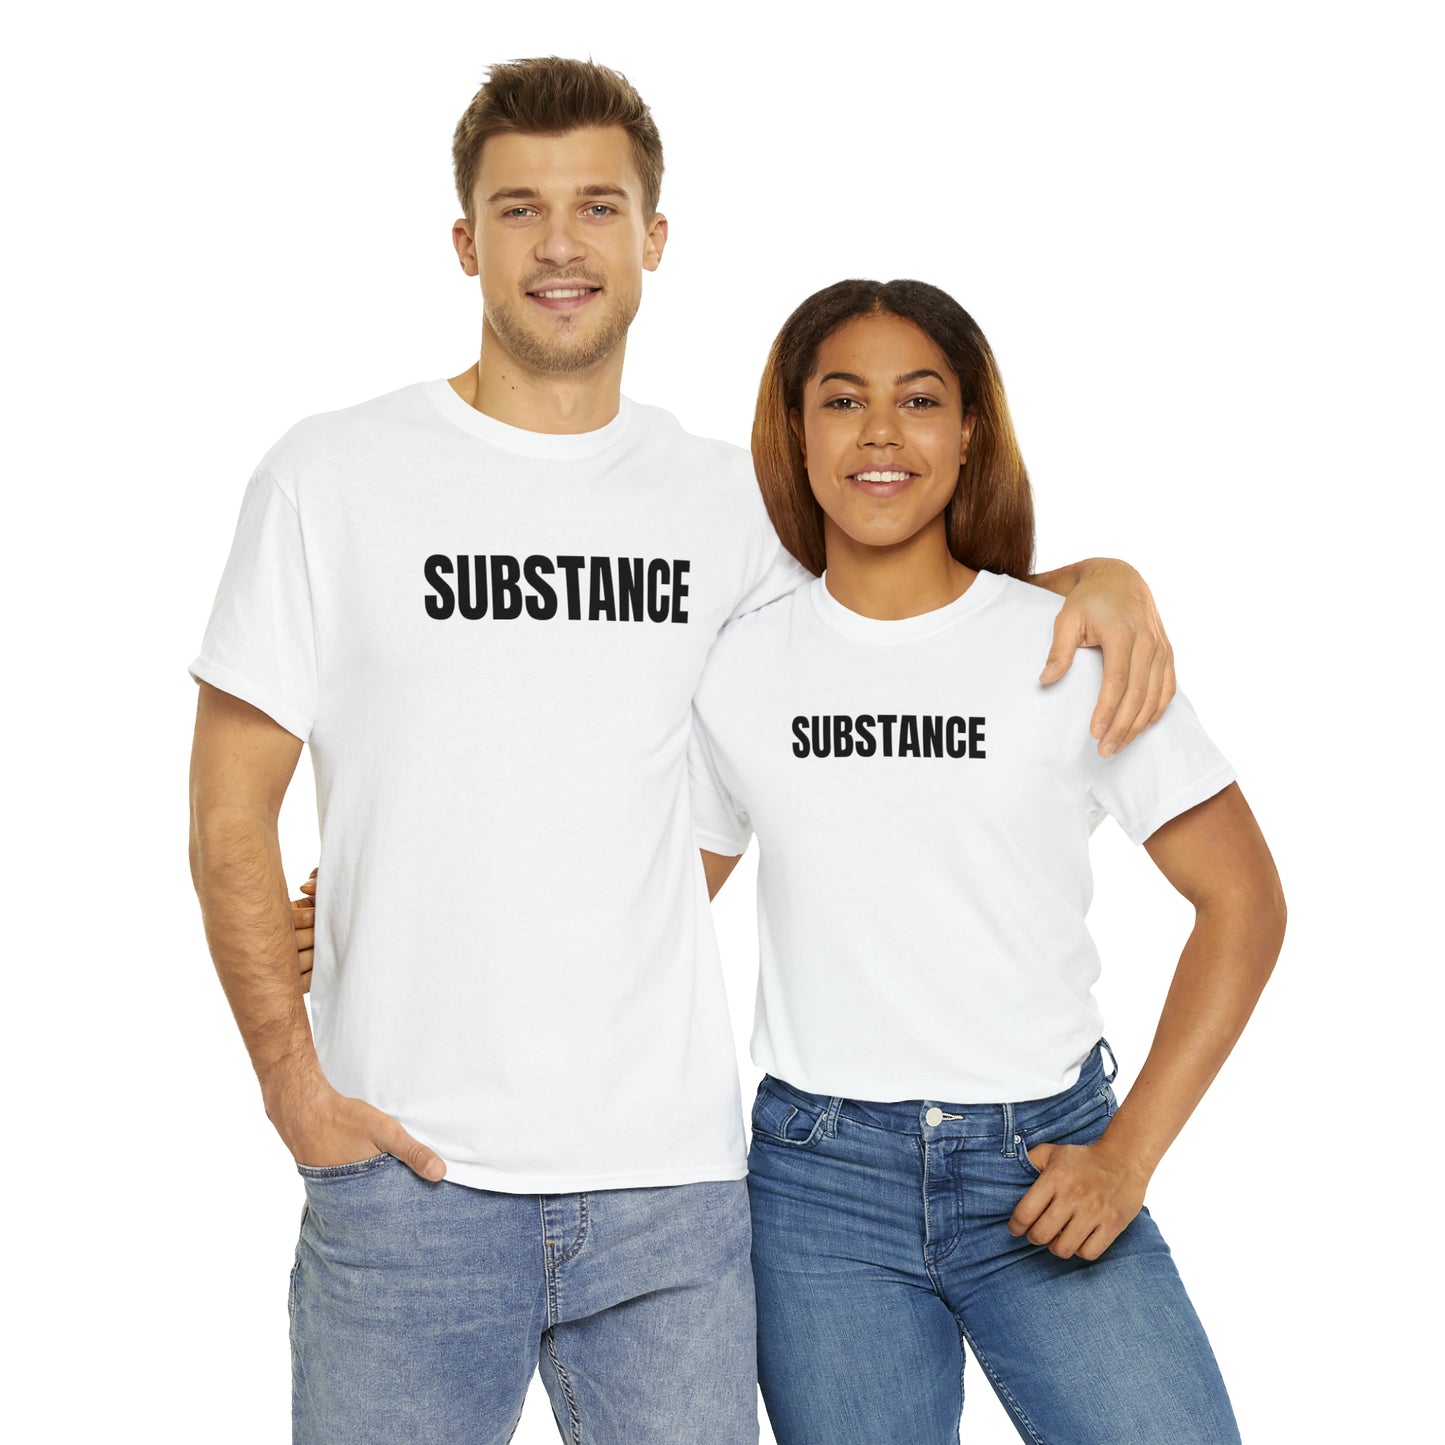 SUBSTANCE T-SHIRT